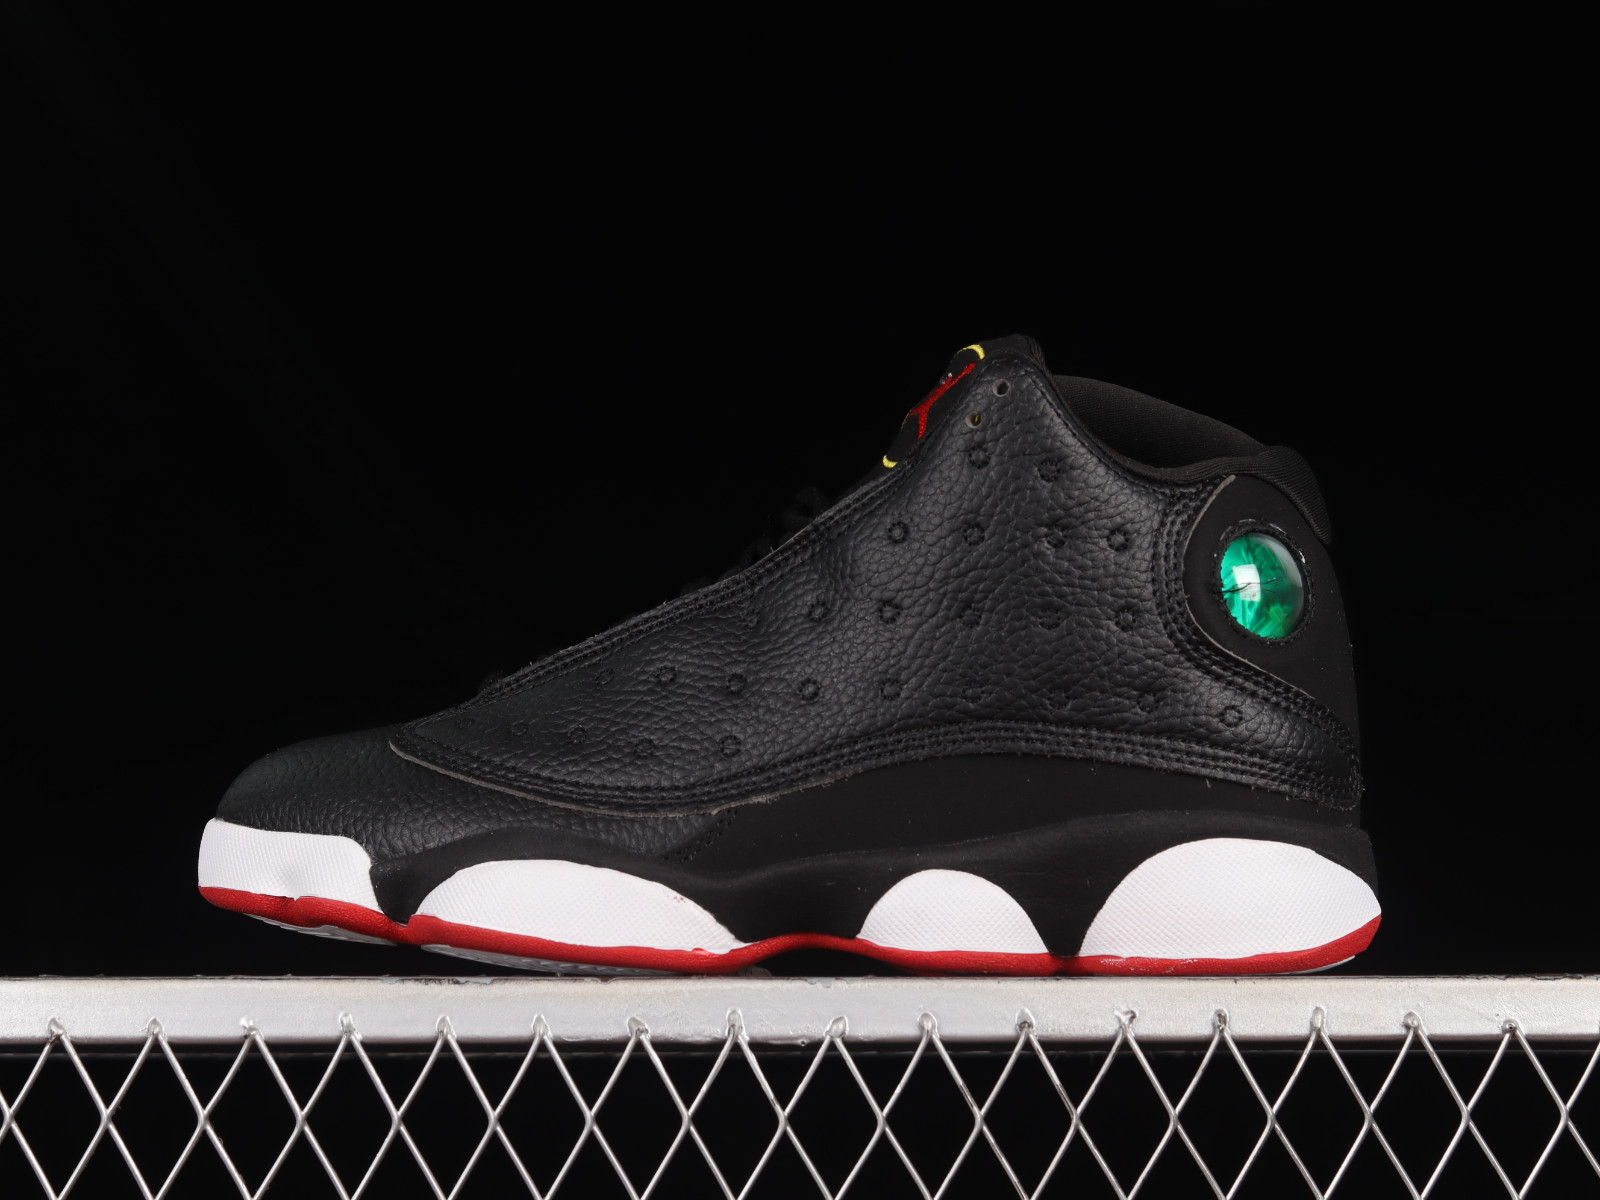 Air Jordan 13 Black Red XIII Review  Nike red sneakers, Air jordans, Jordan  13 black